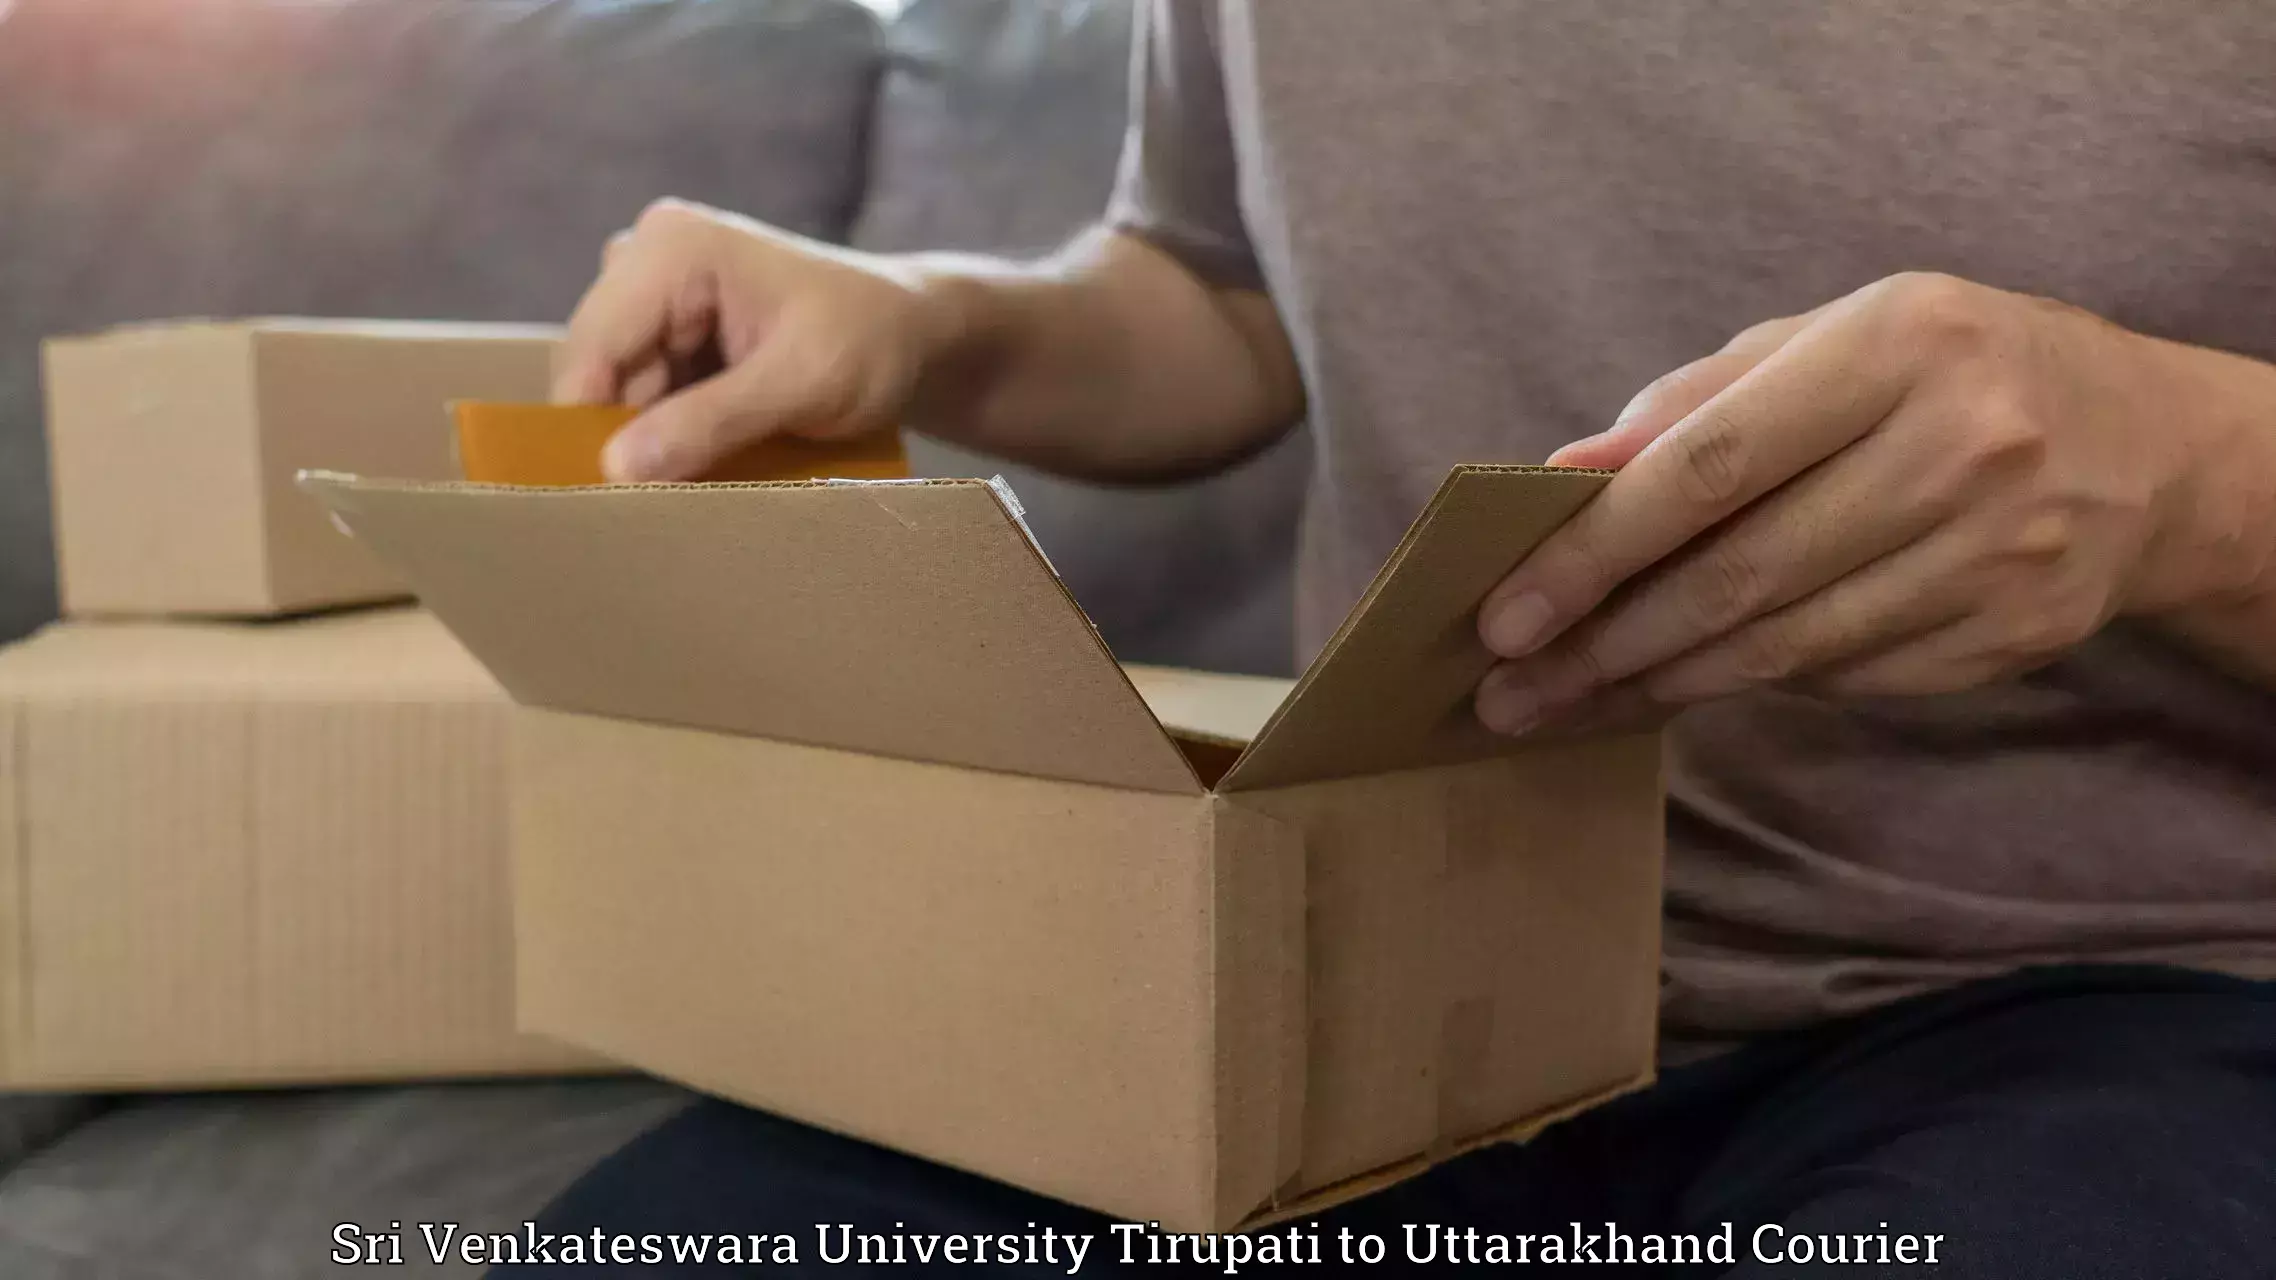 Express package delivery in Sri Venkateswara University Tirupati to Nainital